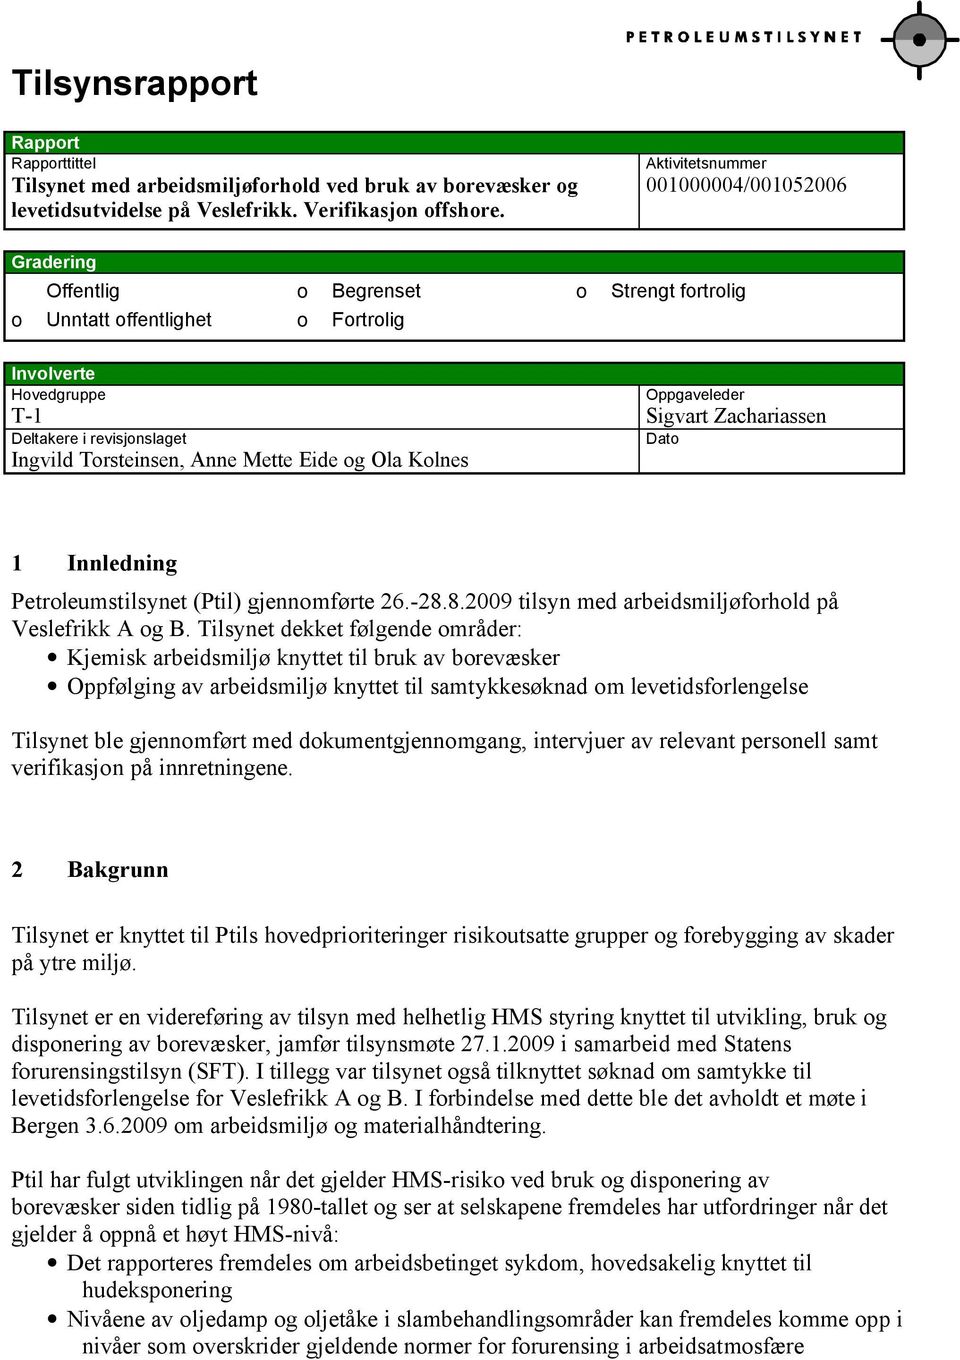 revisjonslaget Dato Ingvild Torsteinsen, Anne Mette Eide og Ola Kolnes 1 Innledning Petroleumstilsynet (Ptil) gjennomførte 26.-28.8.2009 tilsyn med arbeidsmiljøforhold på Veslefrikk A og B.